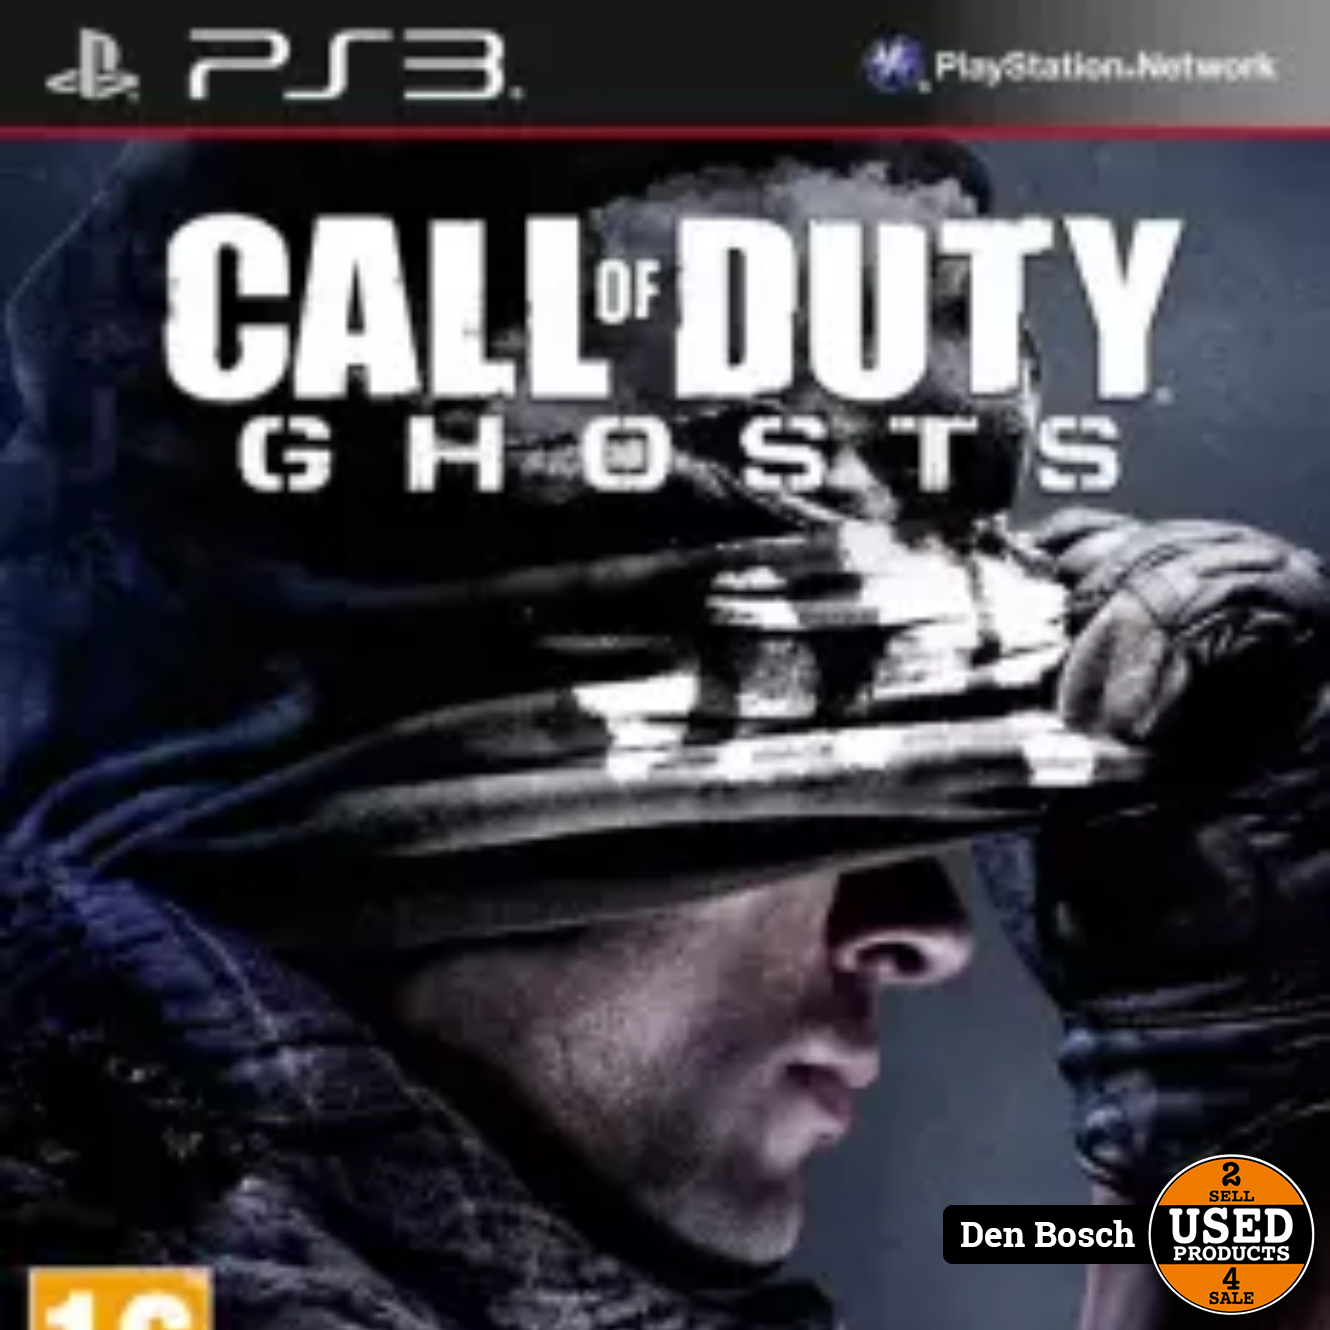 deken verslag doen van vervolging Call of Duty Ghosts - PS3 Game - Used Products Den Bosch